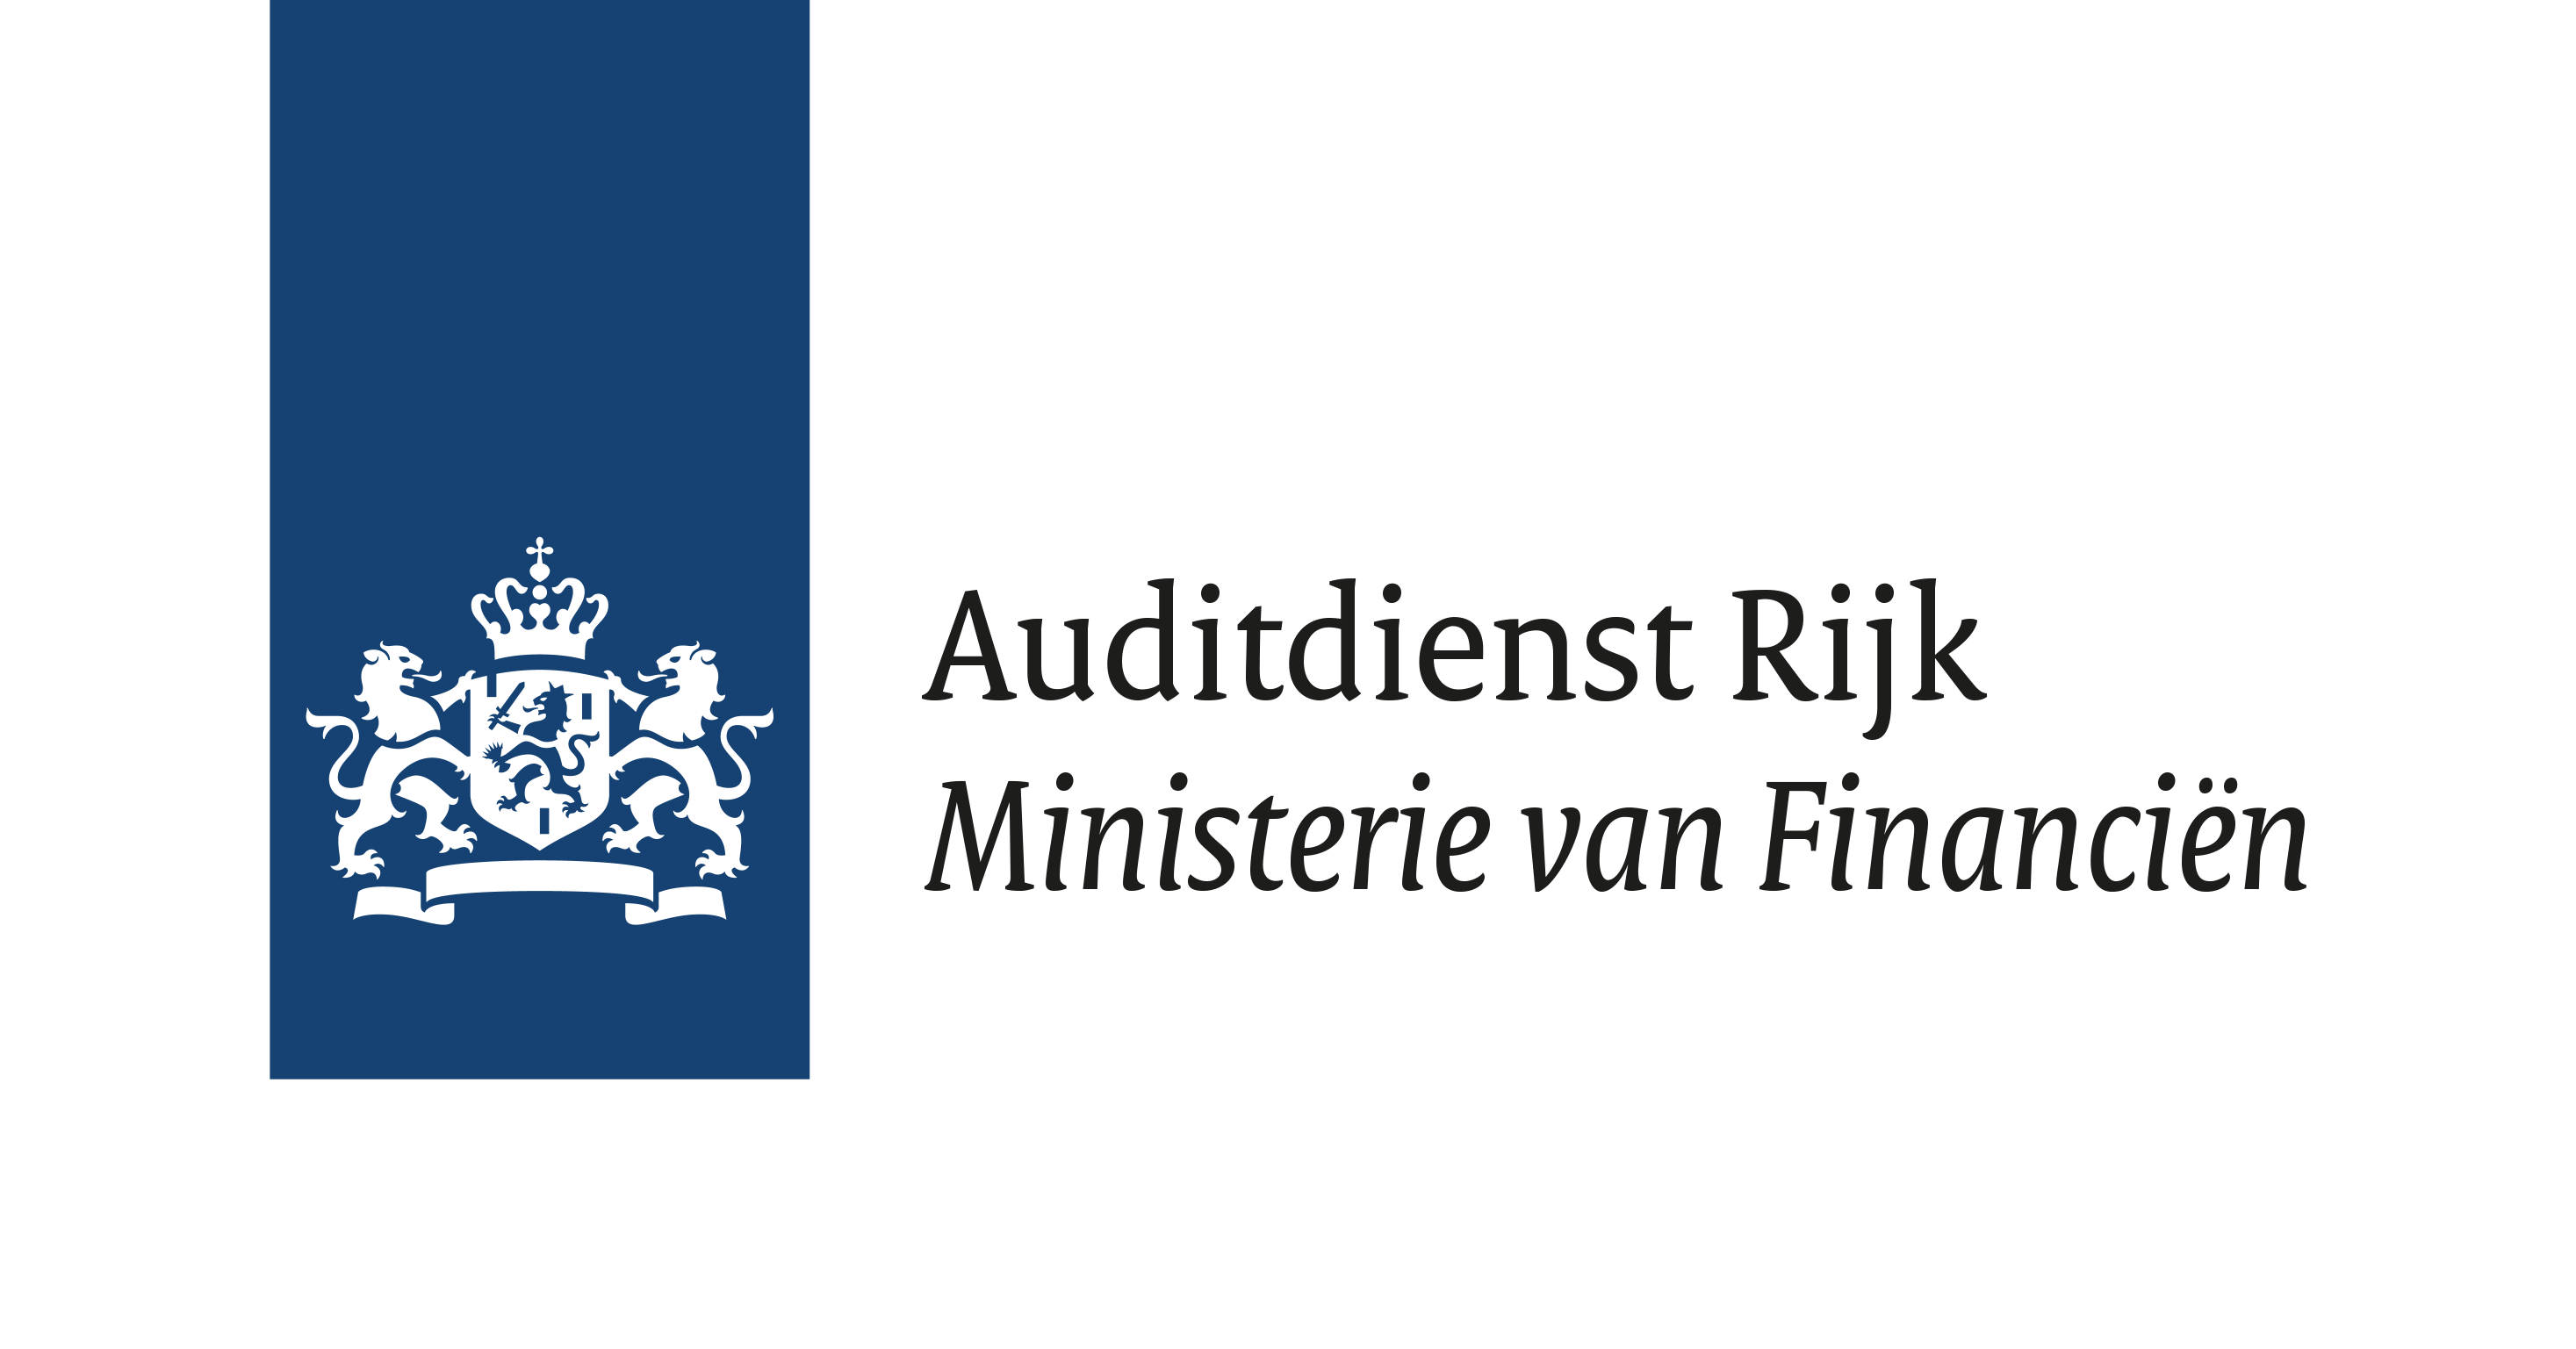 Logo auditdienst rijk